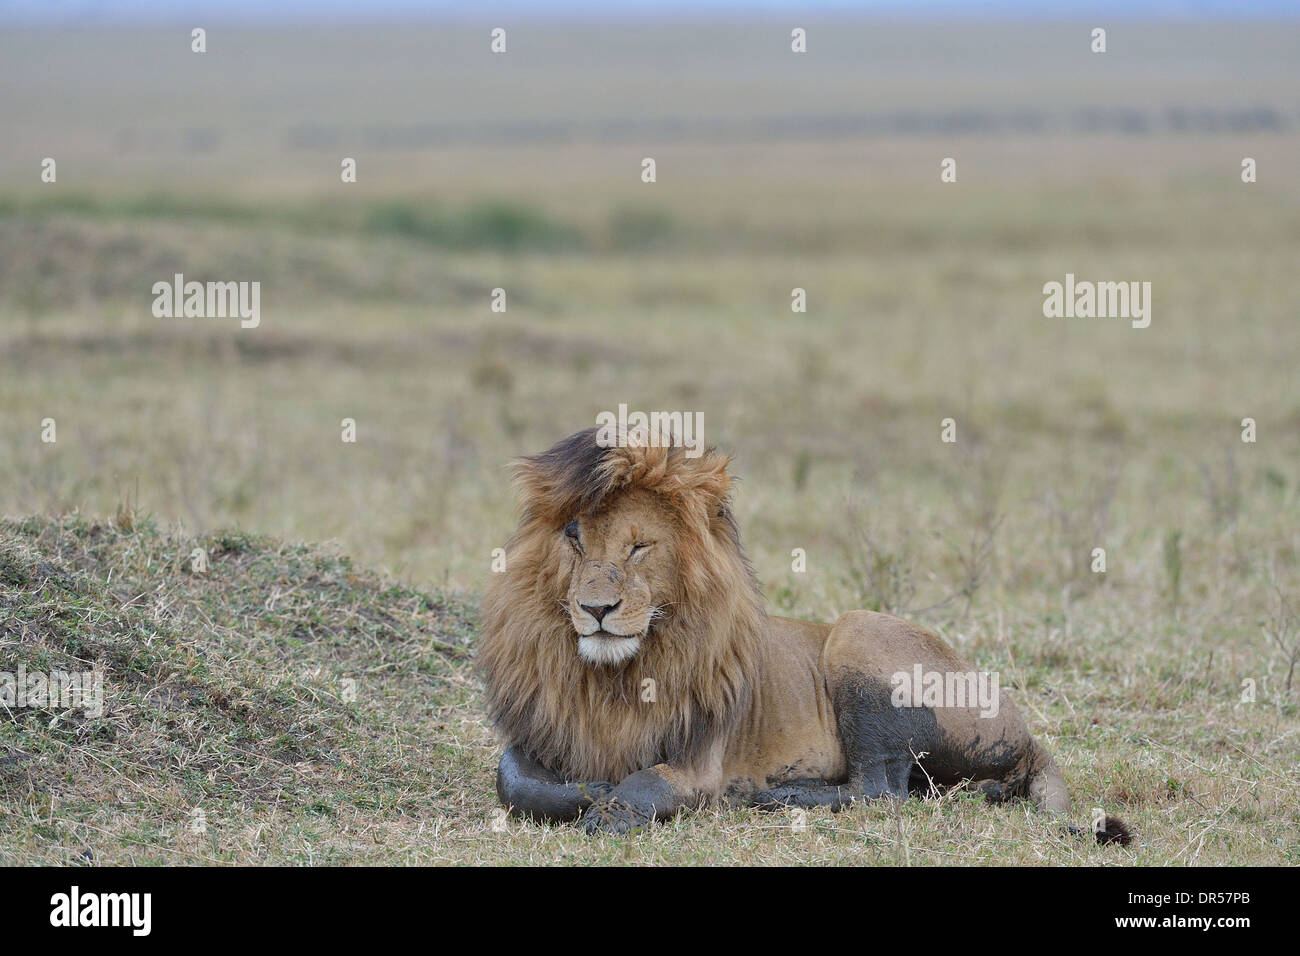 East African Lion - Massai-Löwe (Panthera Leo Nubica) männlich (Scarface) liegen in der Savanne Ostafrikas Masai Mara - Kenia- Stockfoto